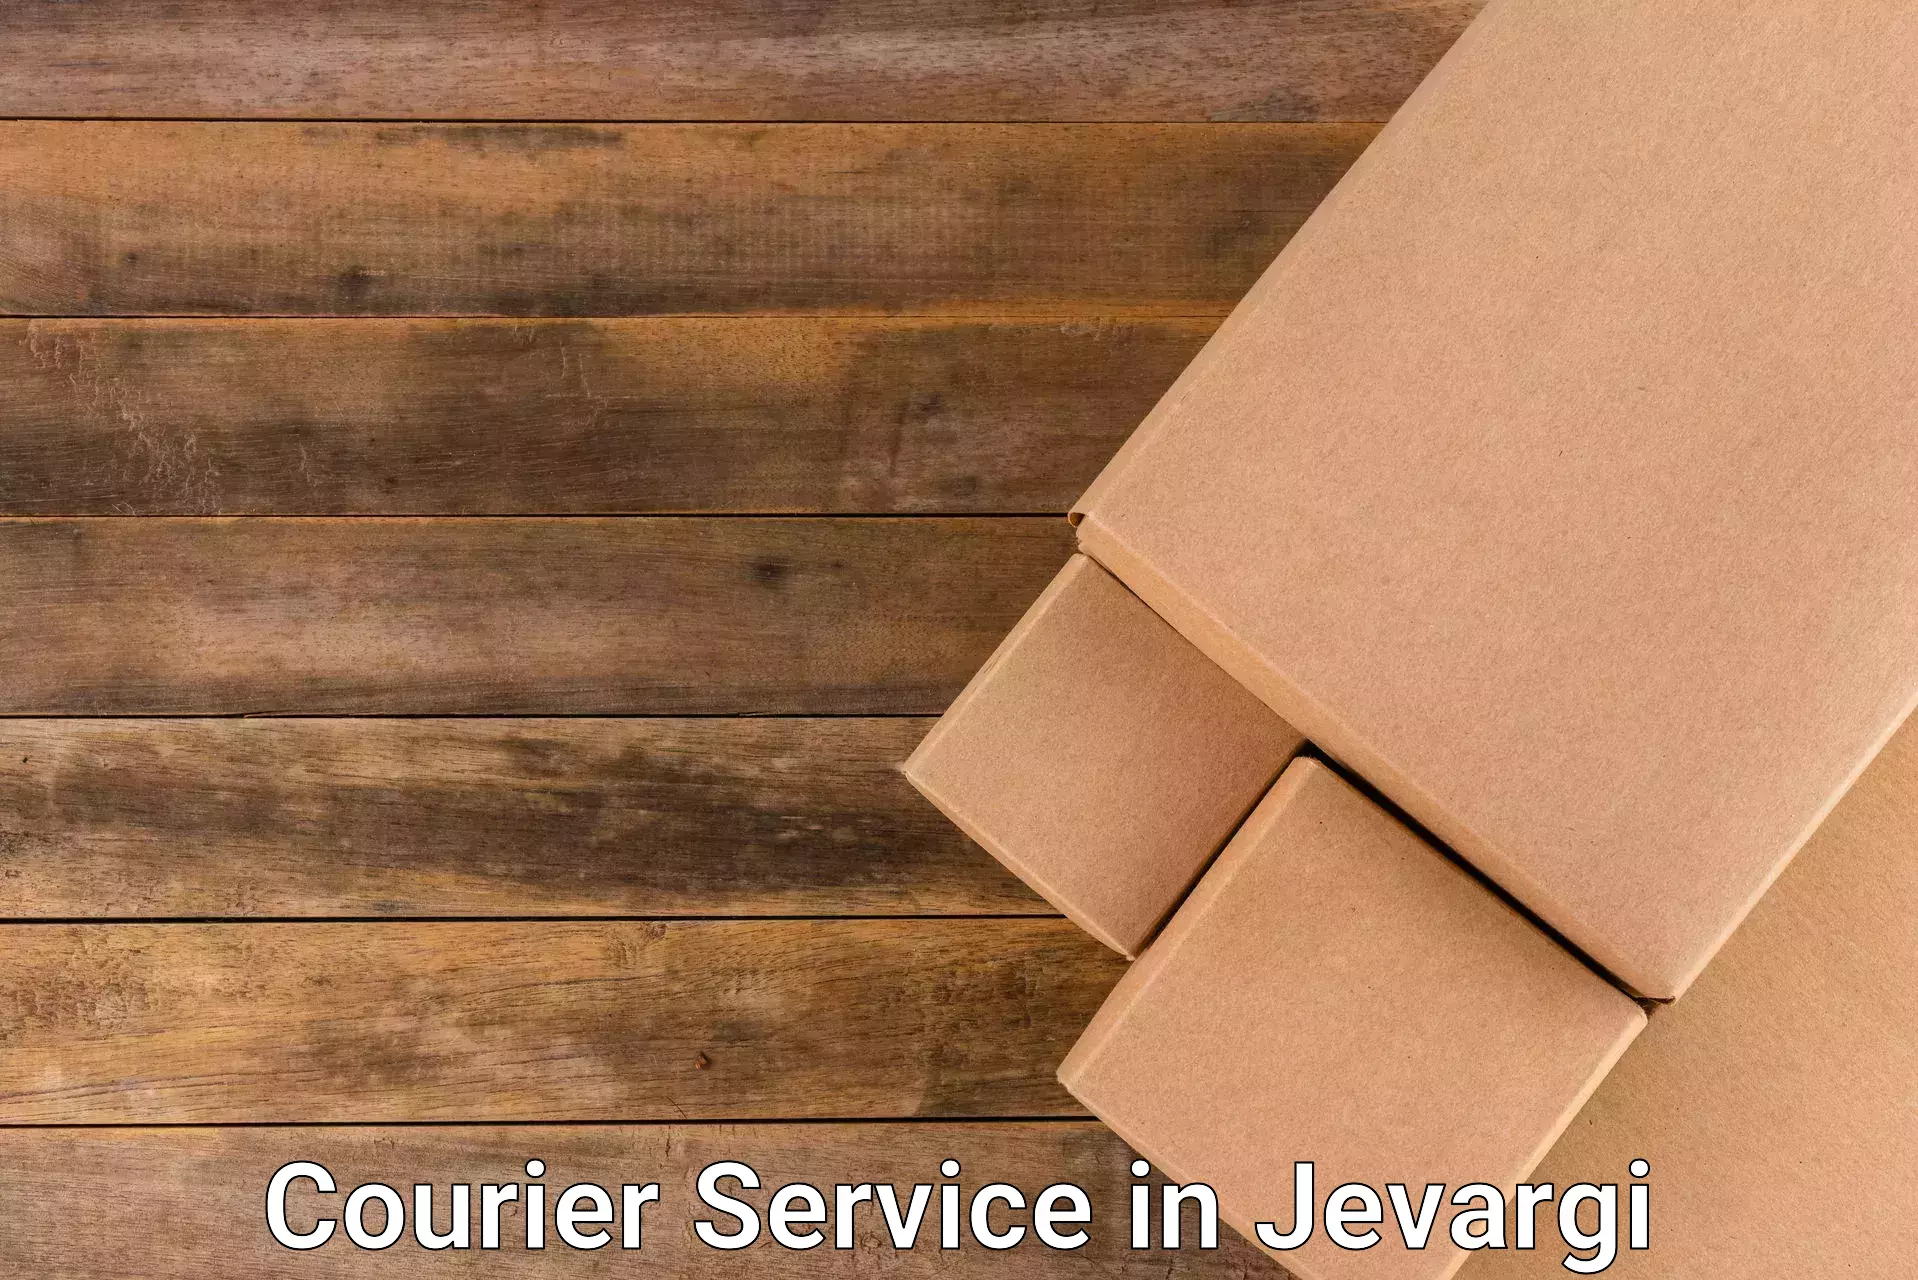 Urban courier service in Jevargi